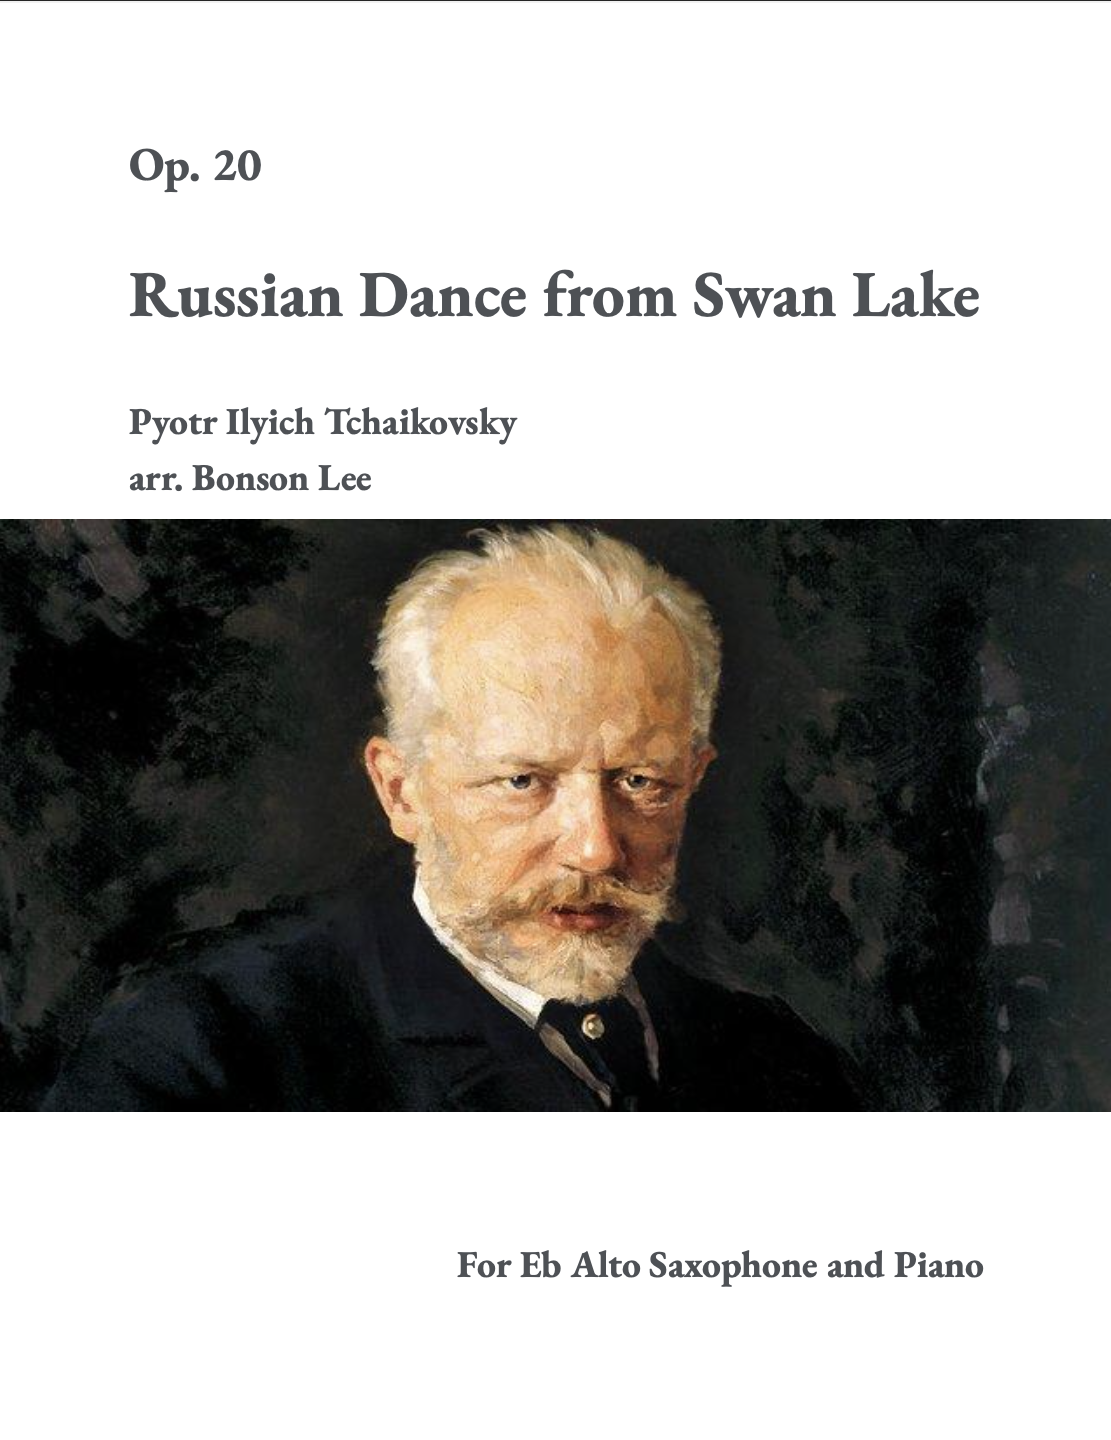 Russian Dance From Swan Lake, Op. 20 (Solo Saxophone Version) by Pyotr Ilyich Tchaikovsky, arr. Bronson Lee